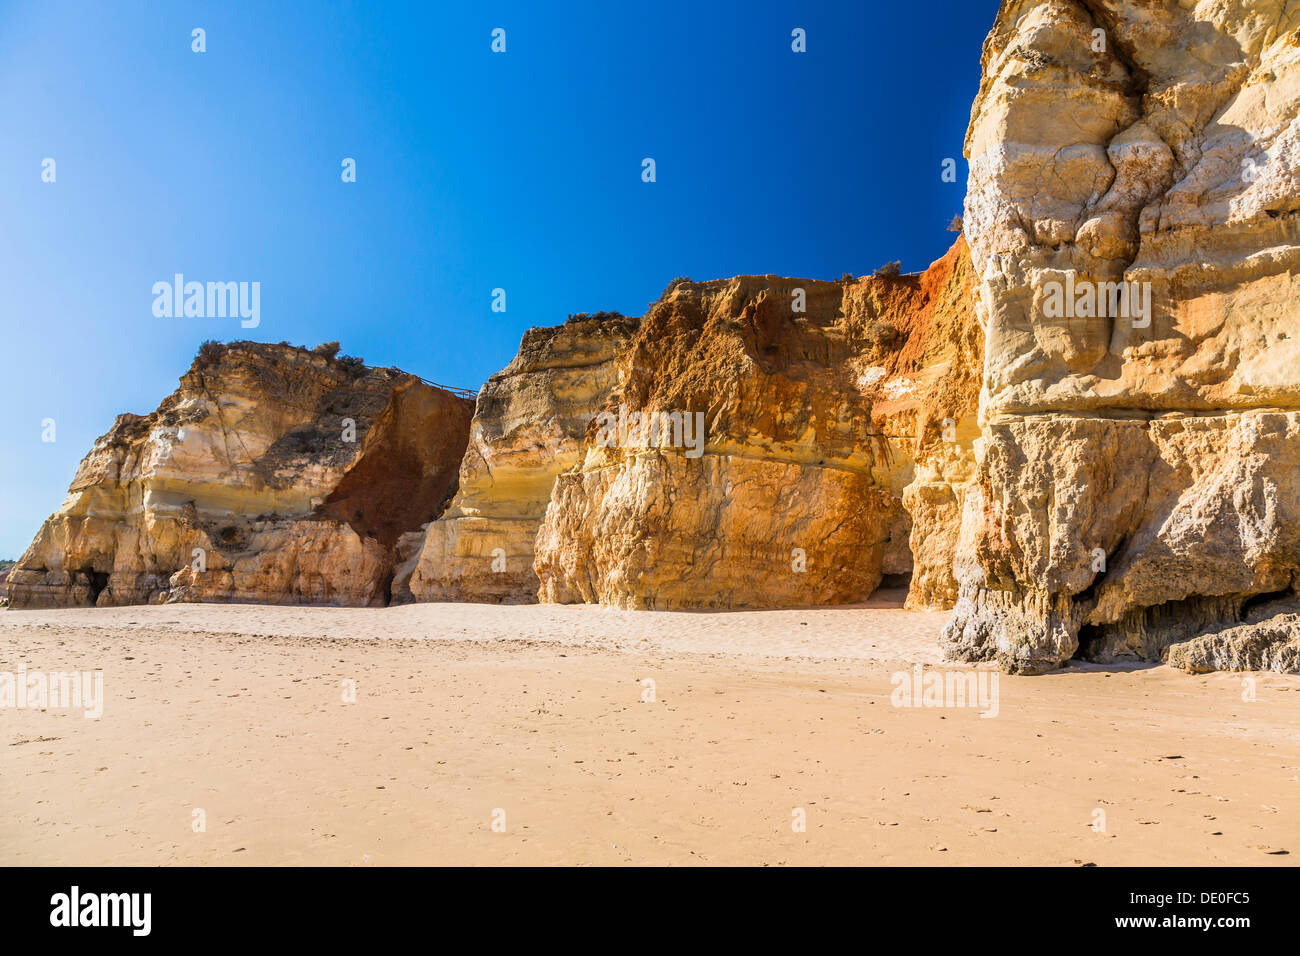 Costa, Praia da Rocha, Portimao Algarve Portogallo, Europa Oceano Atlantico Foto Stock